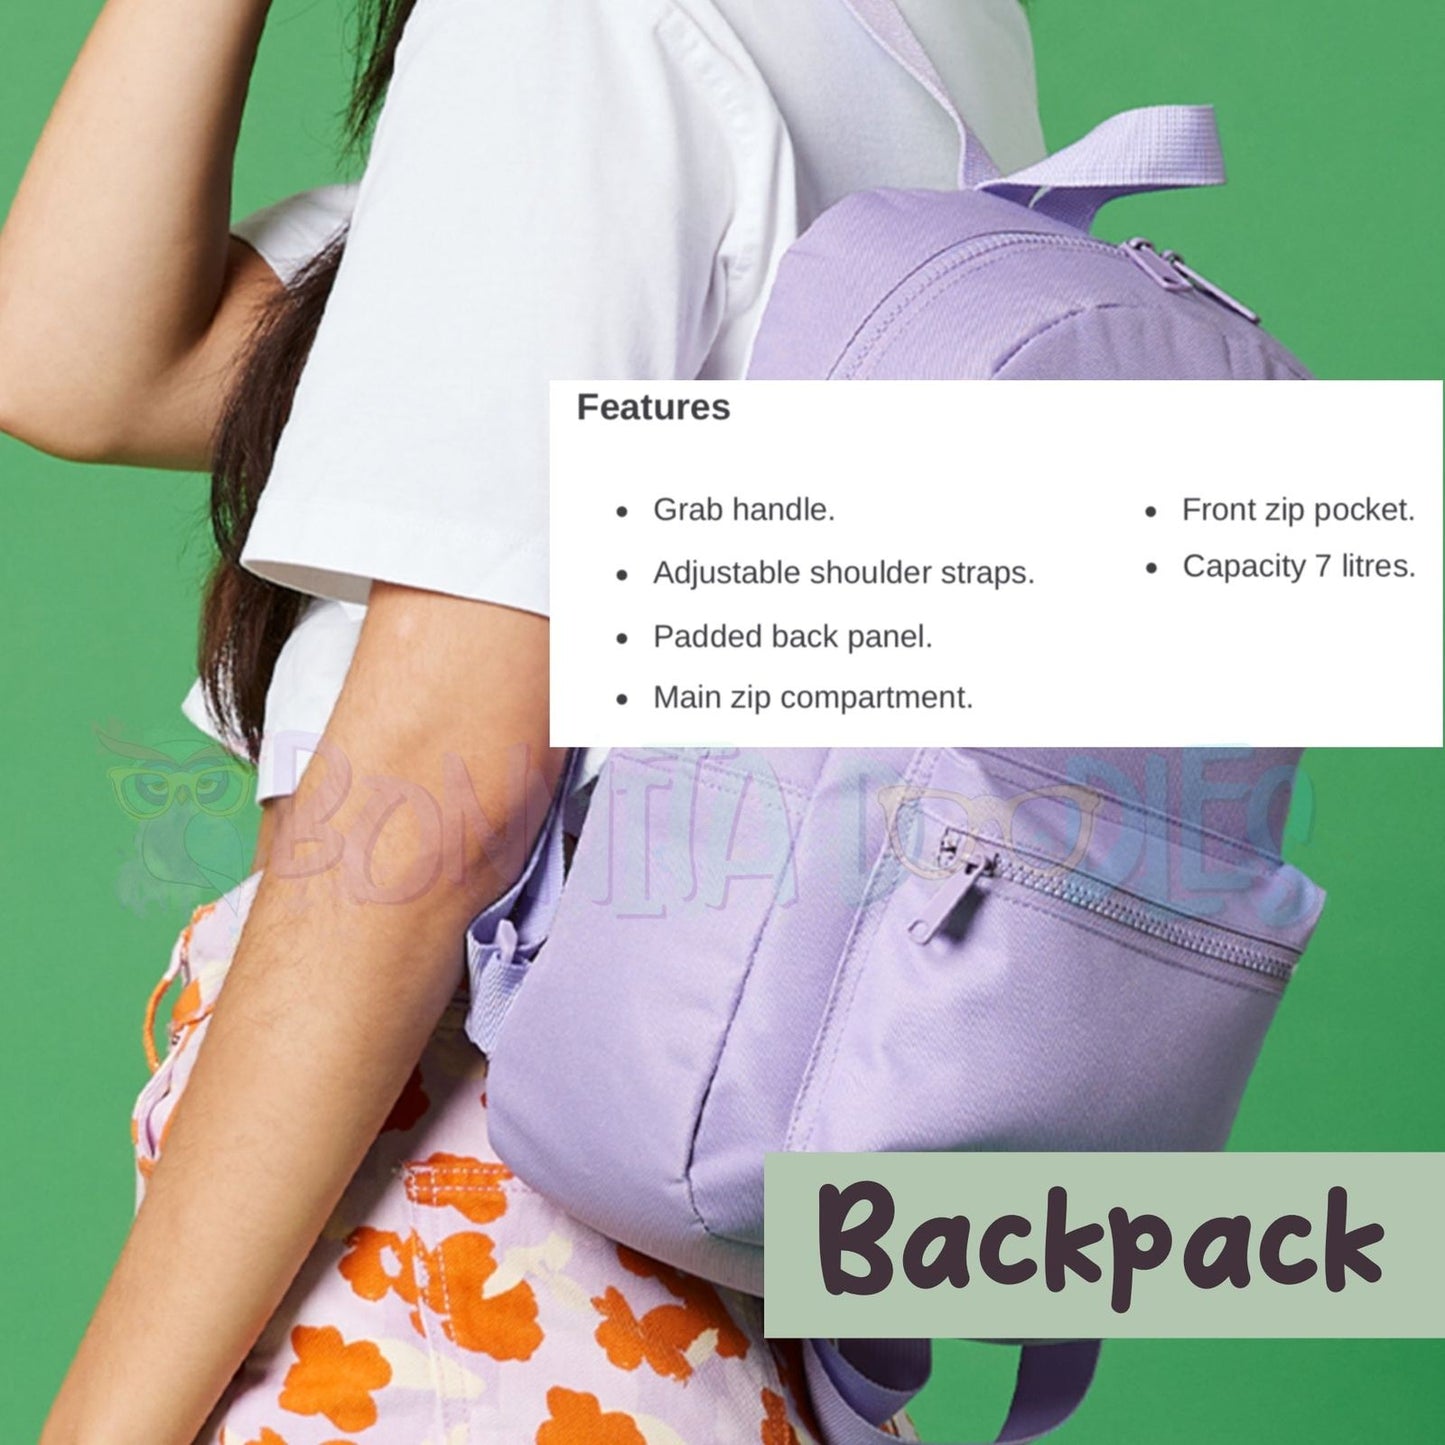 R u ok? Backpack ~ Made to order